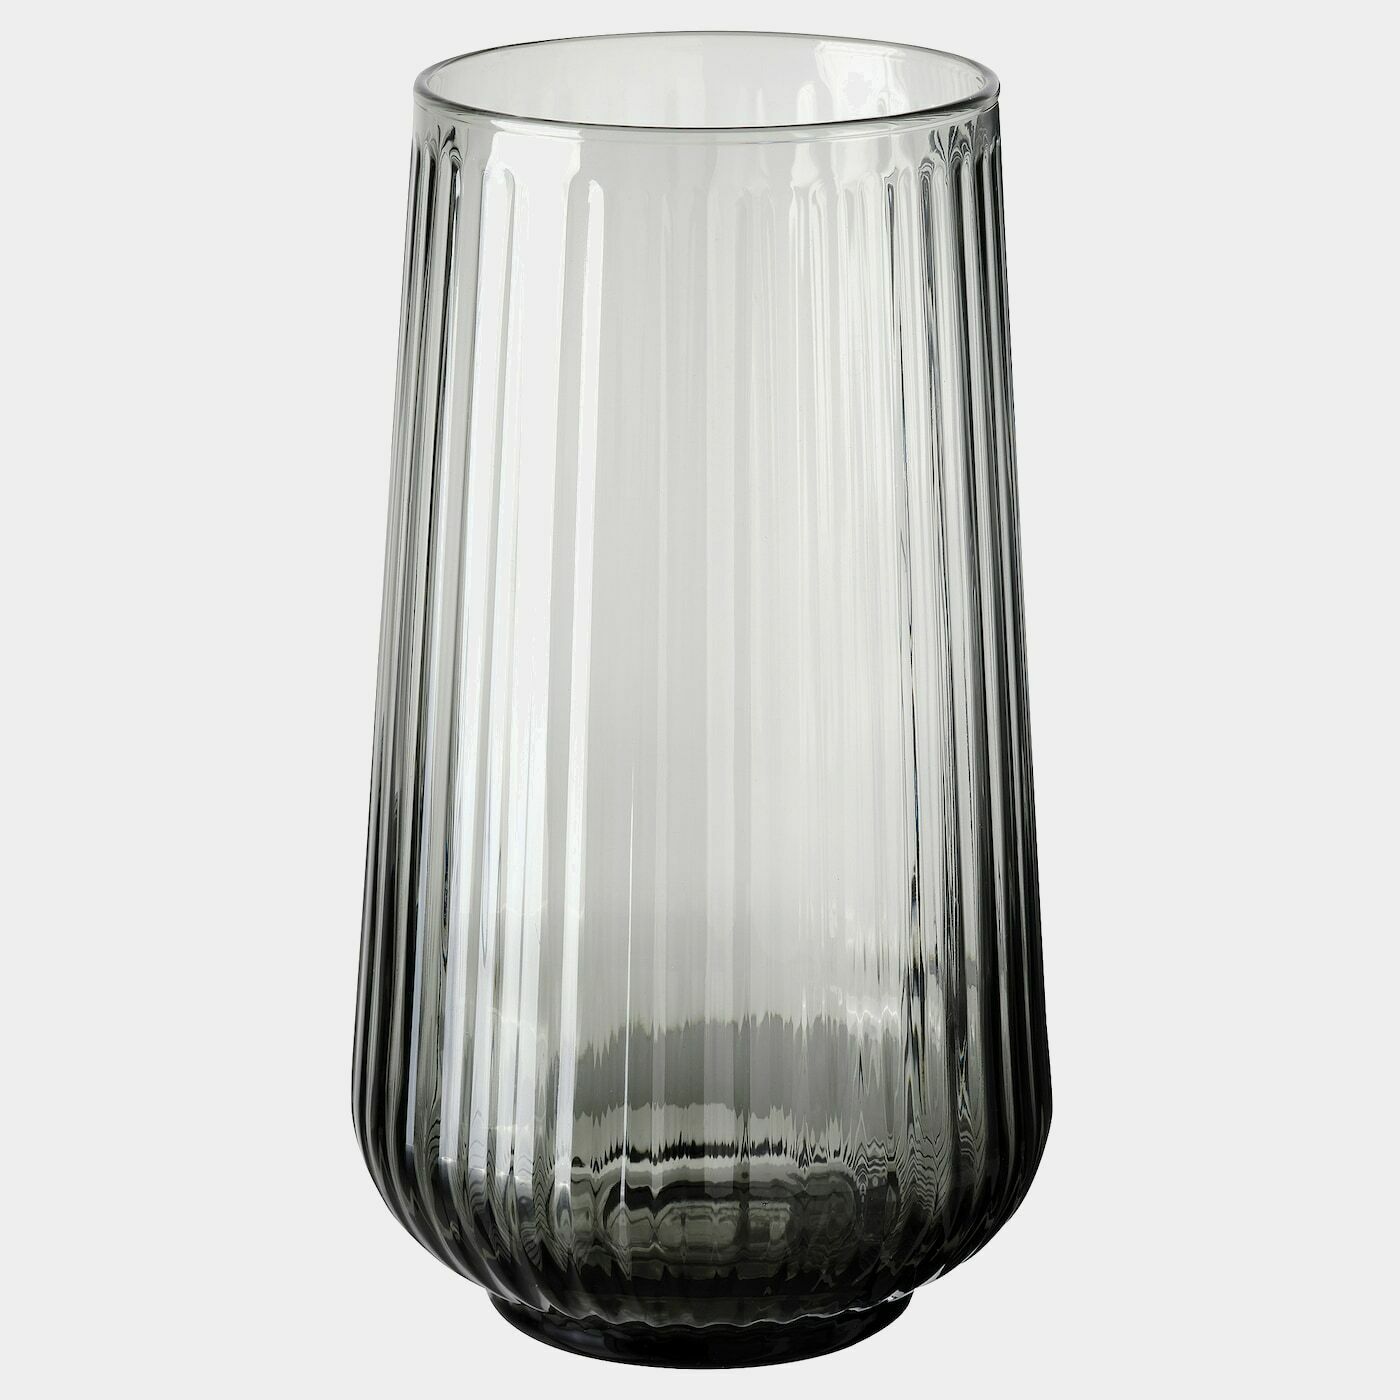 GRADVIS Vase  -  - Möbel Ideen für dein Zuhause von Home Trends. Möbel Trends von Social Media Influencer für dein Skandi Zuhause.